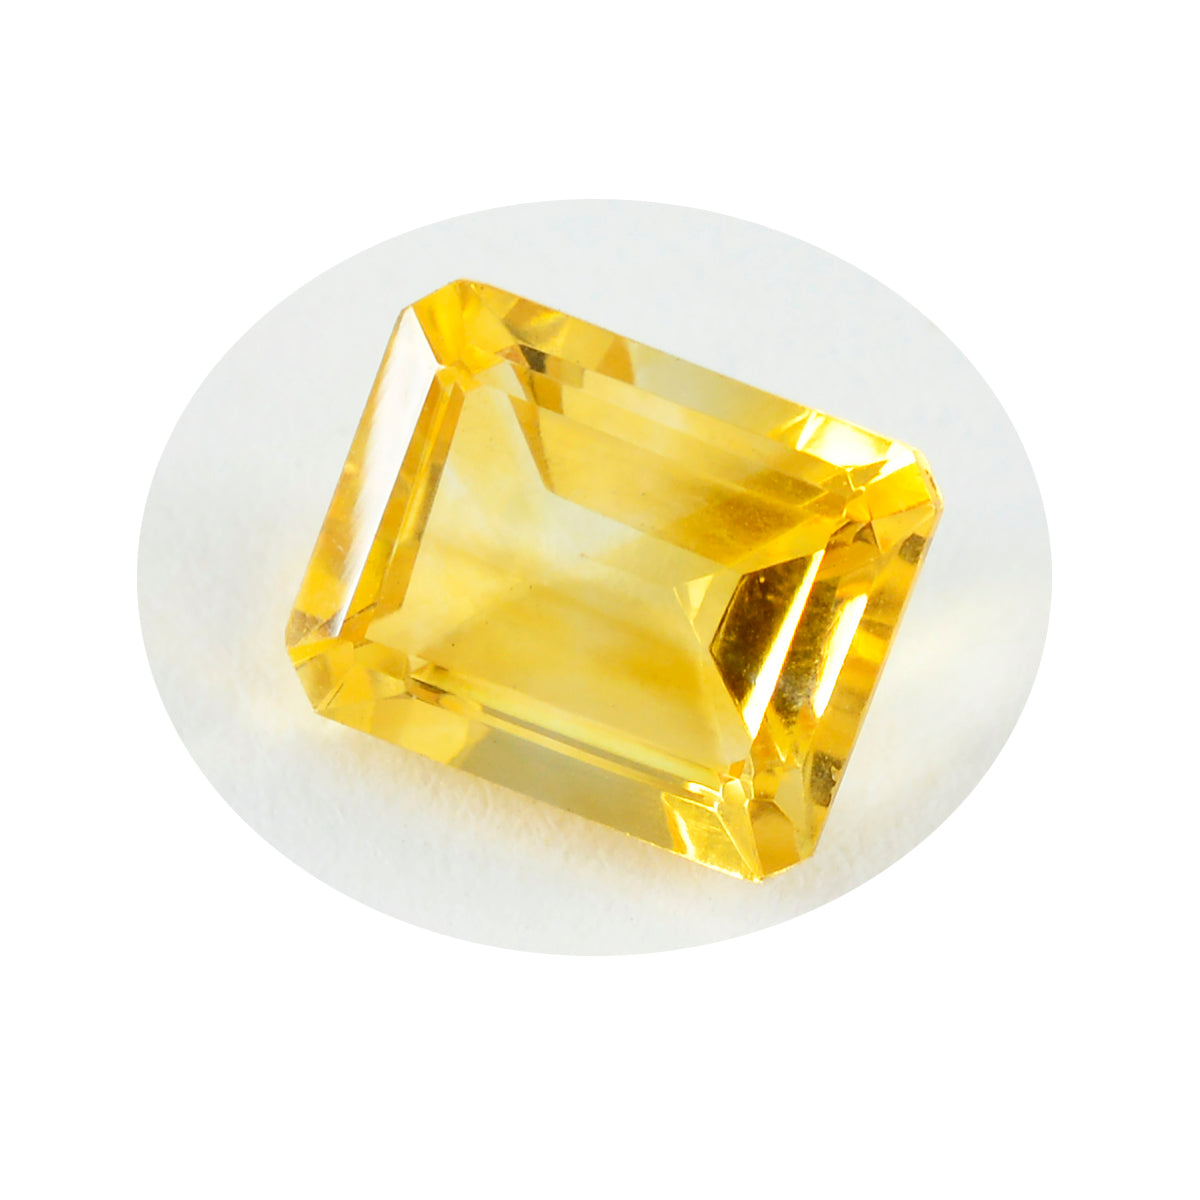 riyogems 1шт натуральный желтый цитрин ограненный 10x14 мм восьмиугольная форма драгоценный камень отличного качества